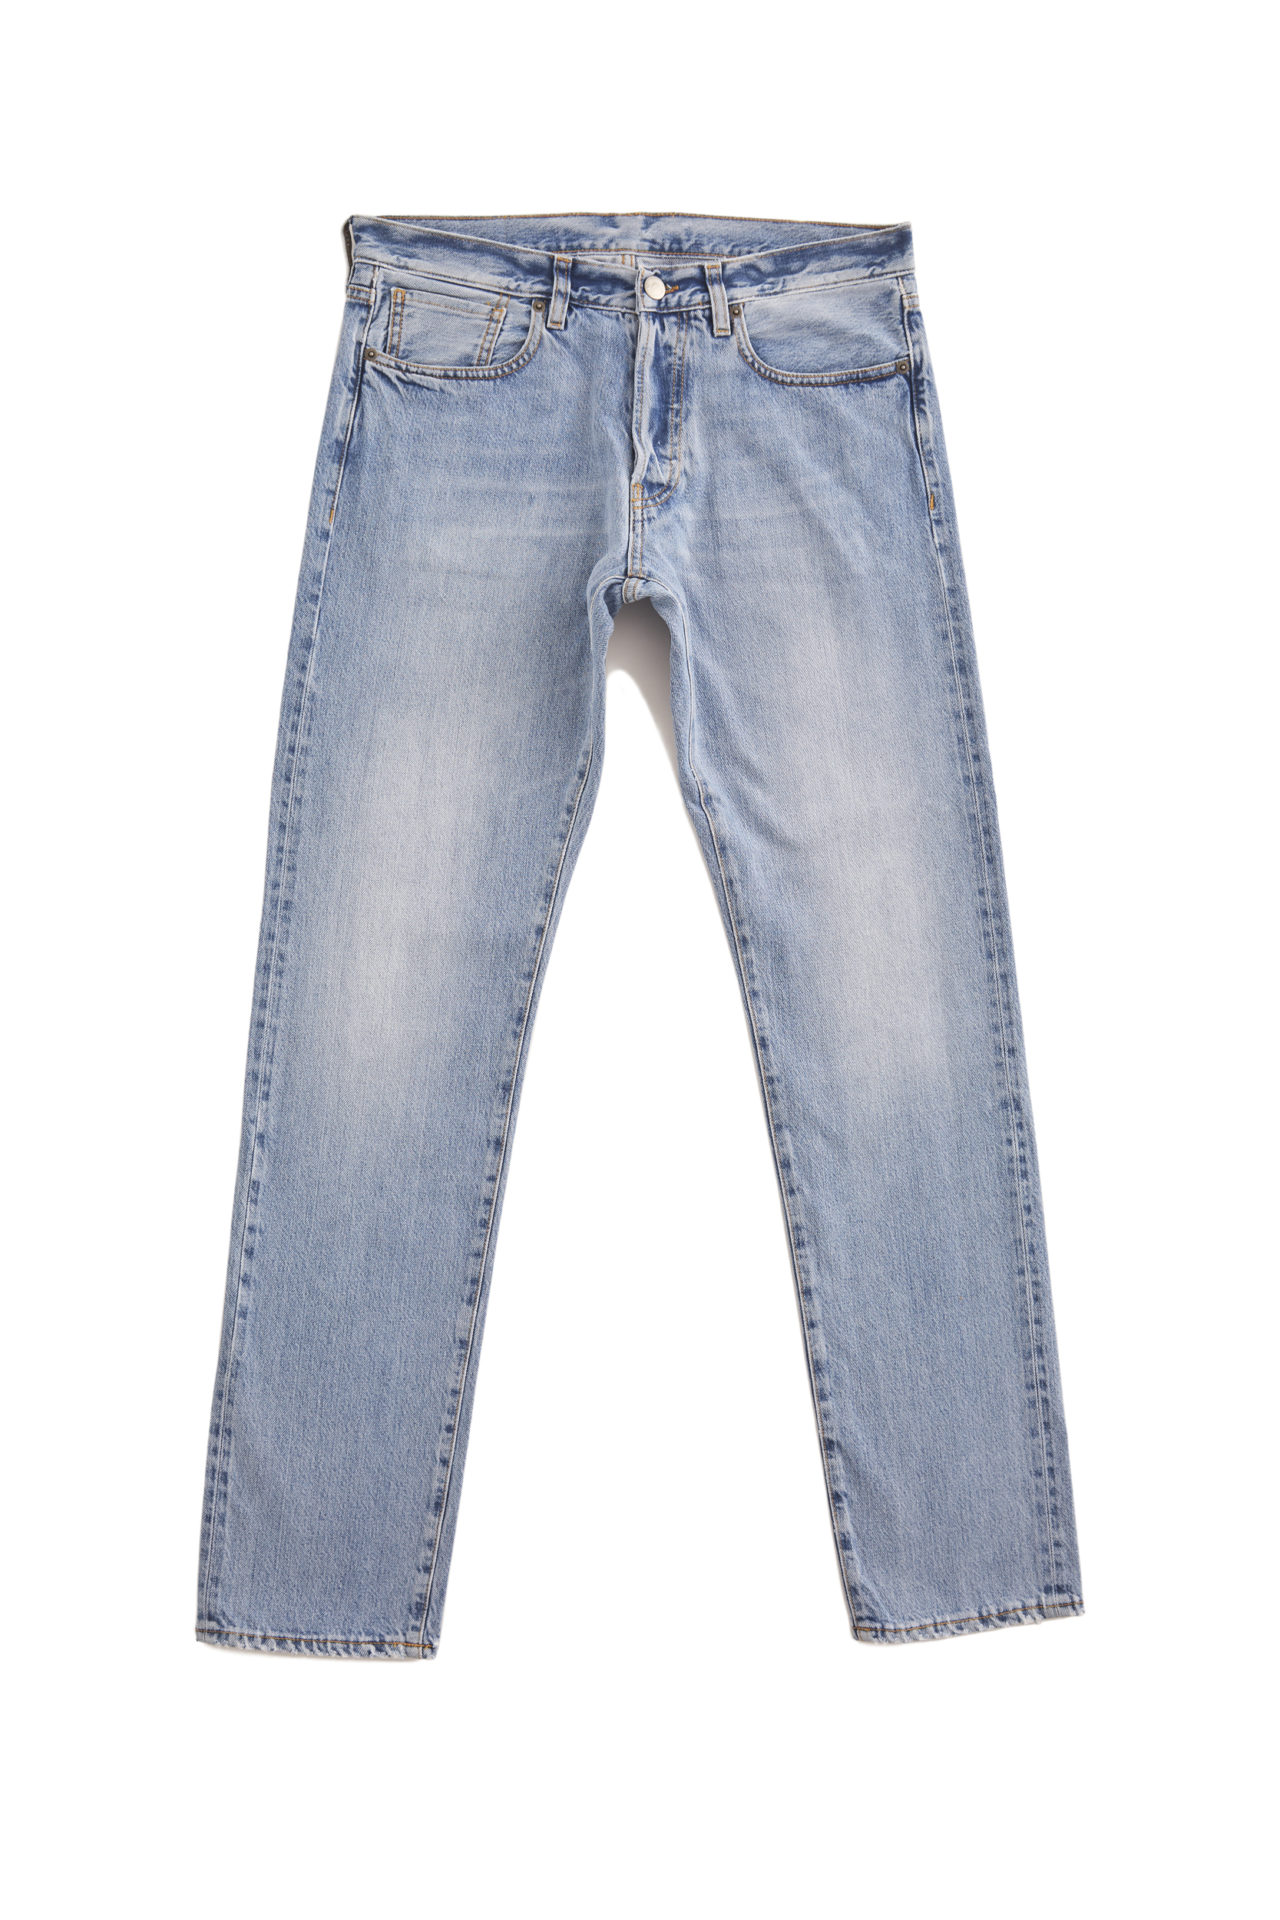 Buy Men Blue Light Wash Low Skinny Fit Jeans Online - 718468 | Peter England